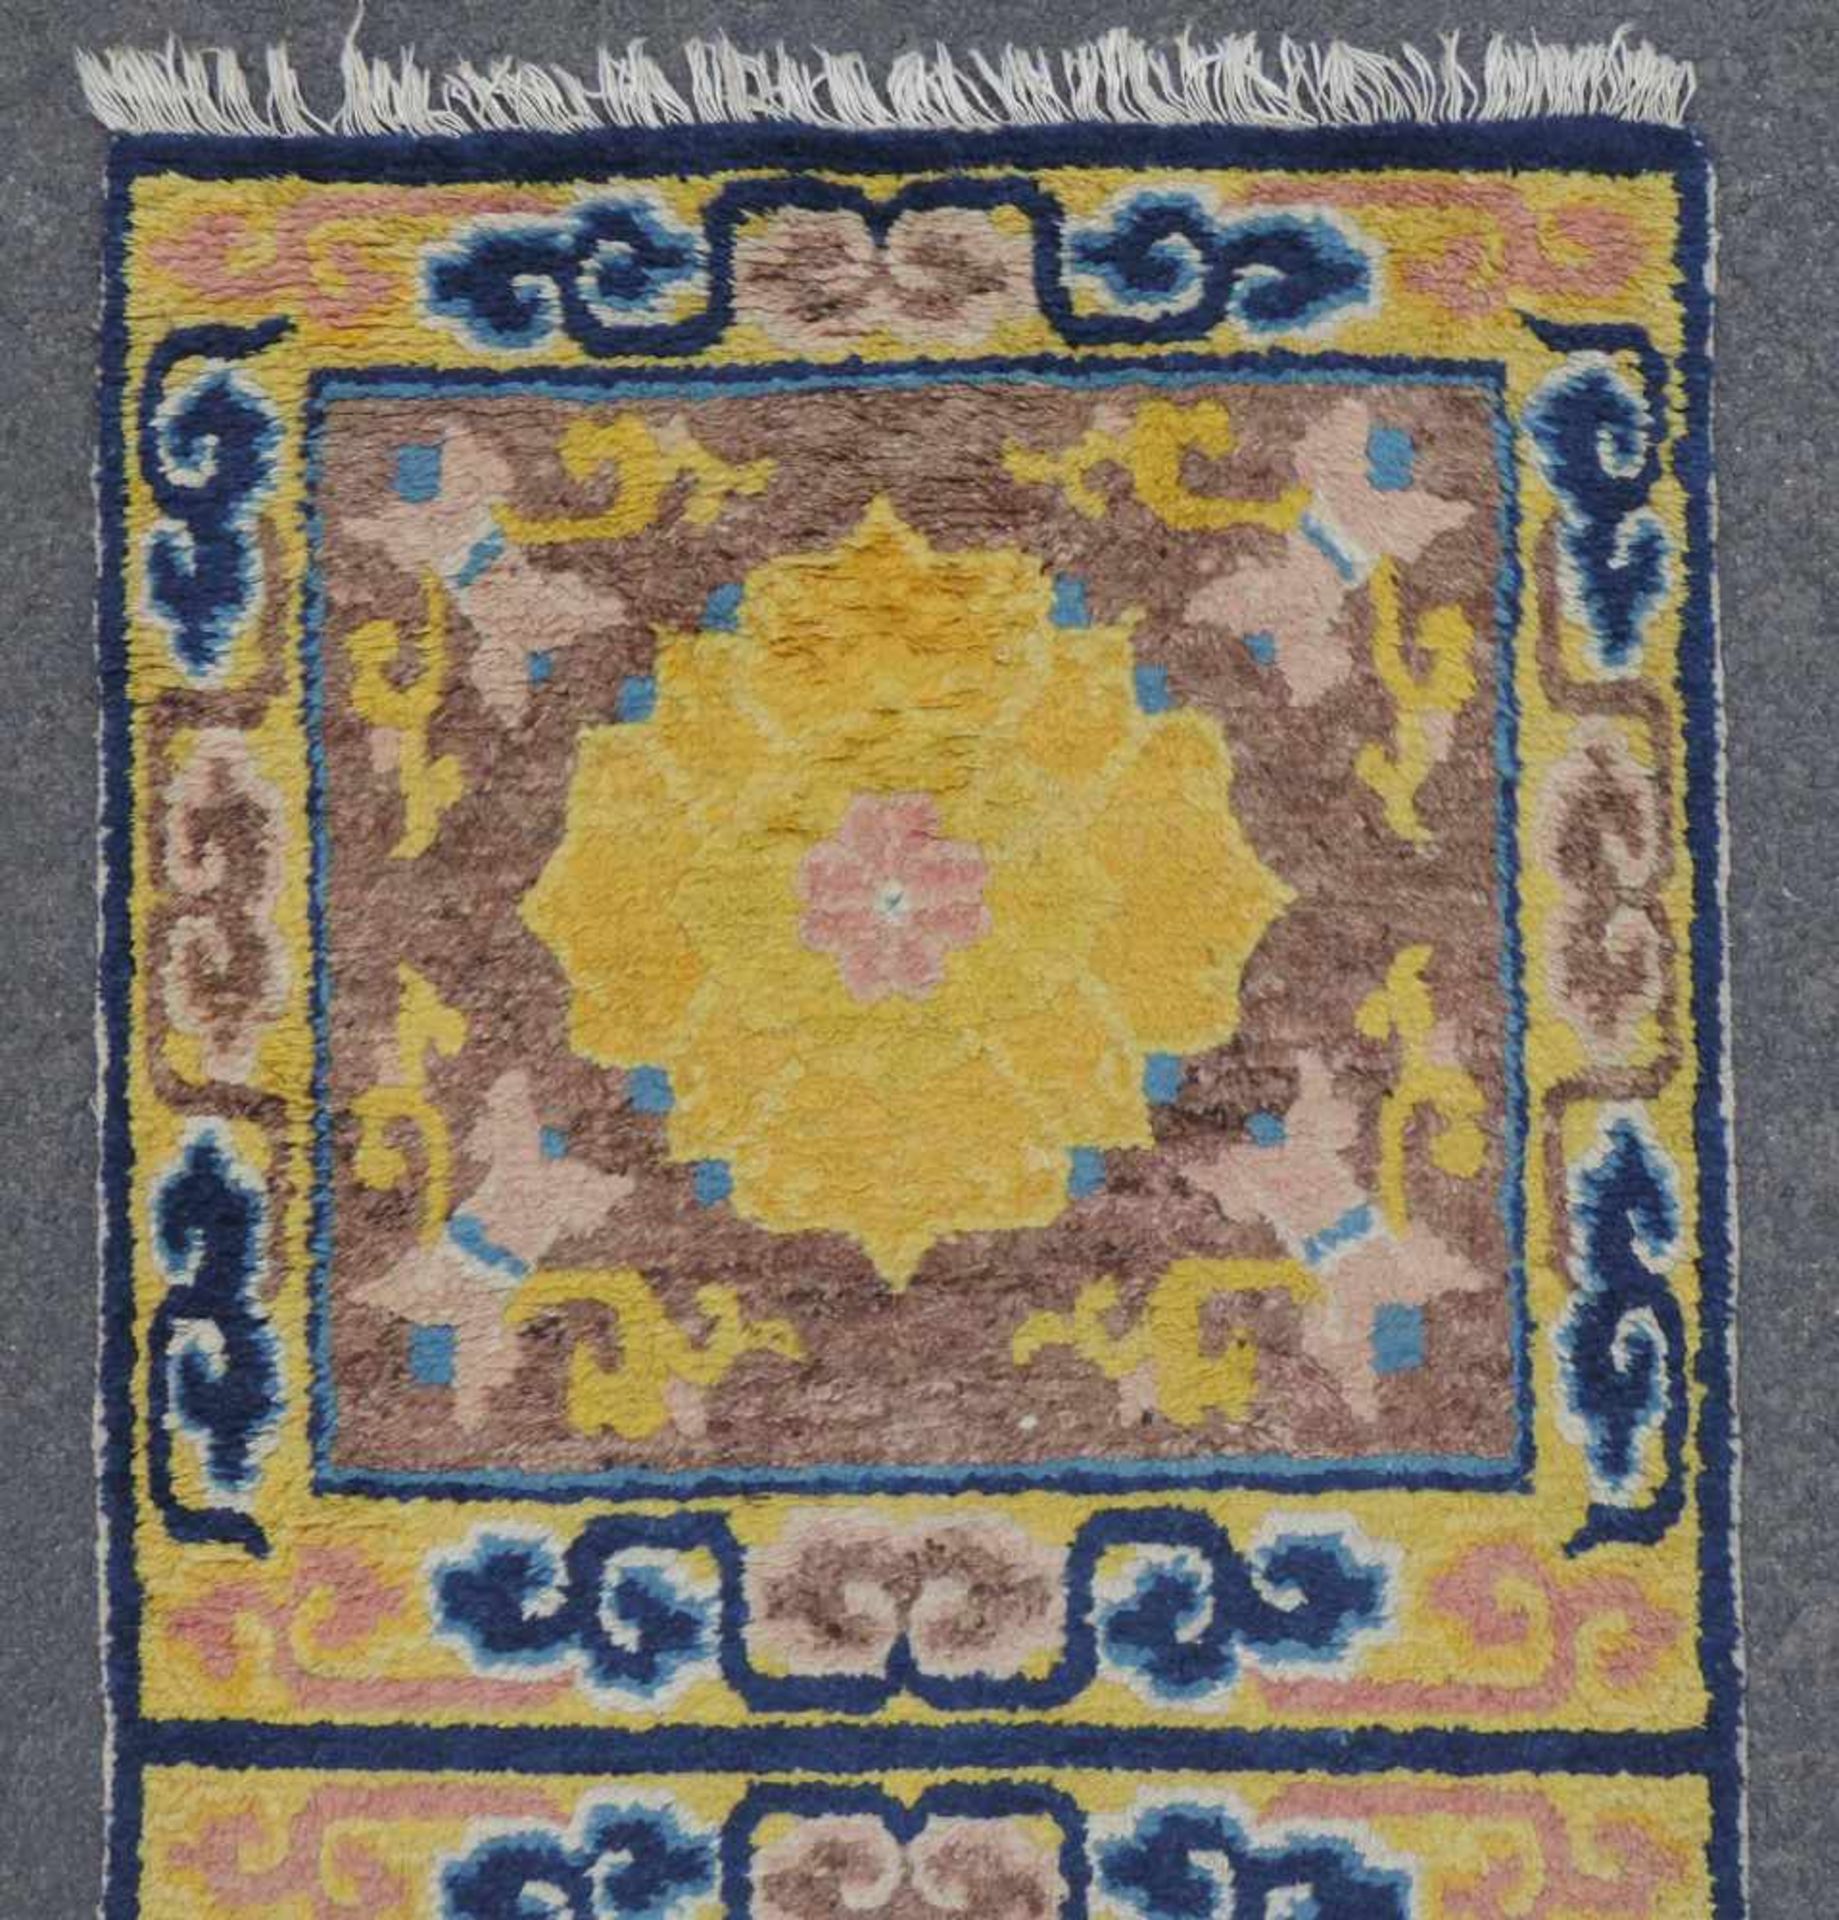 Ning Hsia Sitzplatzteppich für 3 Personen. China. Antik, um 1800. 187 cm x 61 cm. Handgeknüpft. - Image 4 of 5